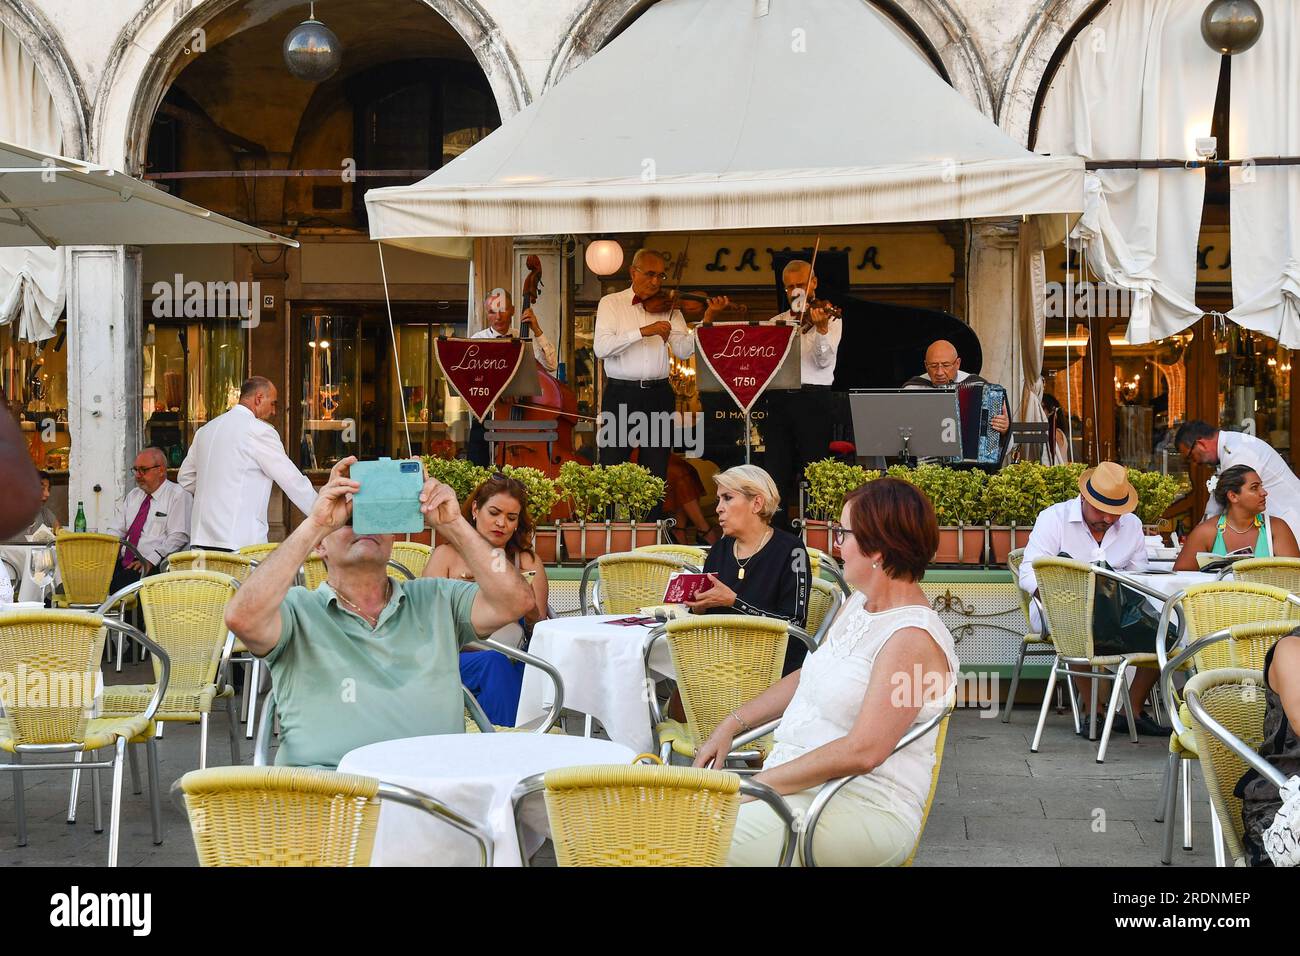 Das Caffè Lavena ist ein historisches Kaffeehaus, das 1750 auf dem berühmten Markusplatz errichtet wurde und im Sommer mit Touristen in Venedig, Venetien, Italien, unterwegs ist Stockfoto